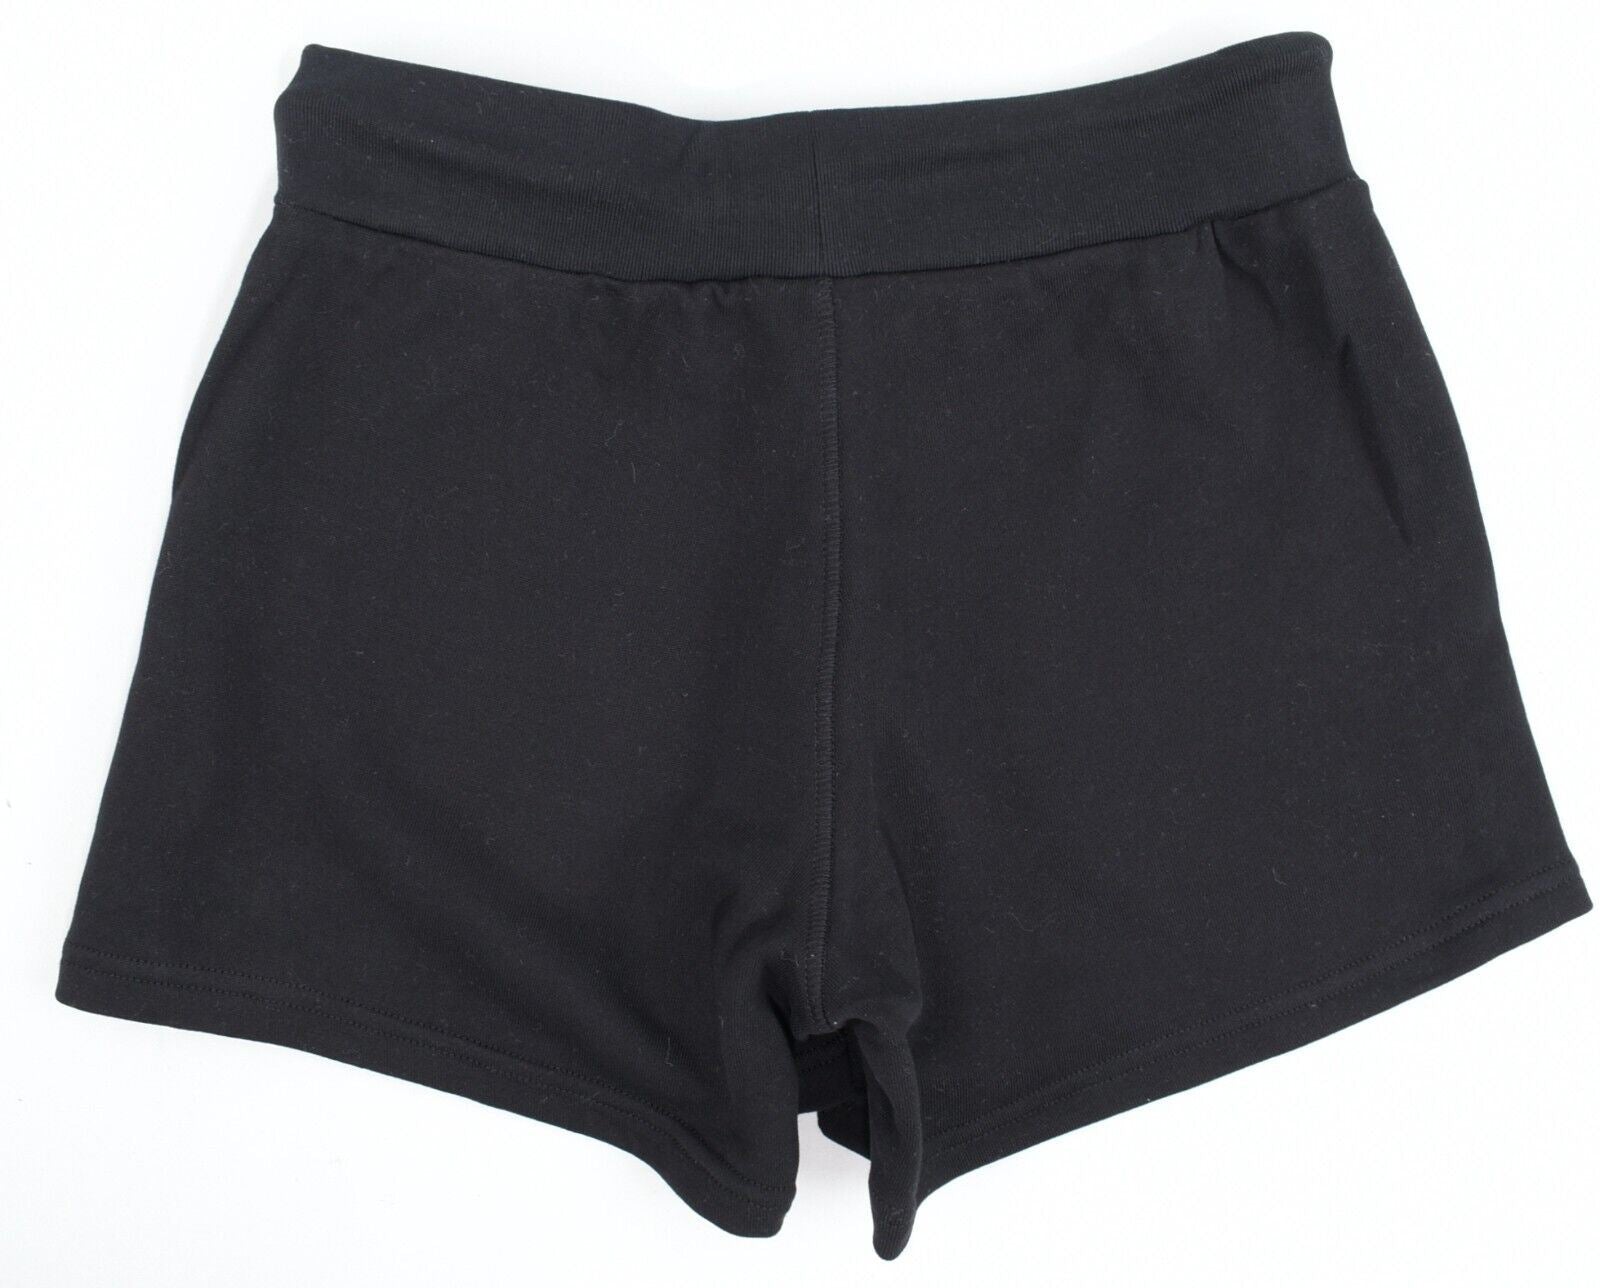 DIESEL Loungewear: Women's French Terry Sweat Shorts, Black, size S /UK 10